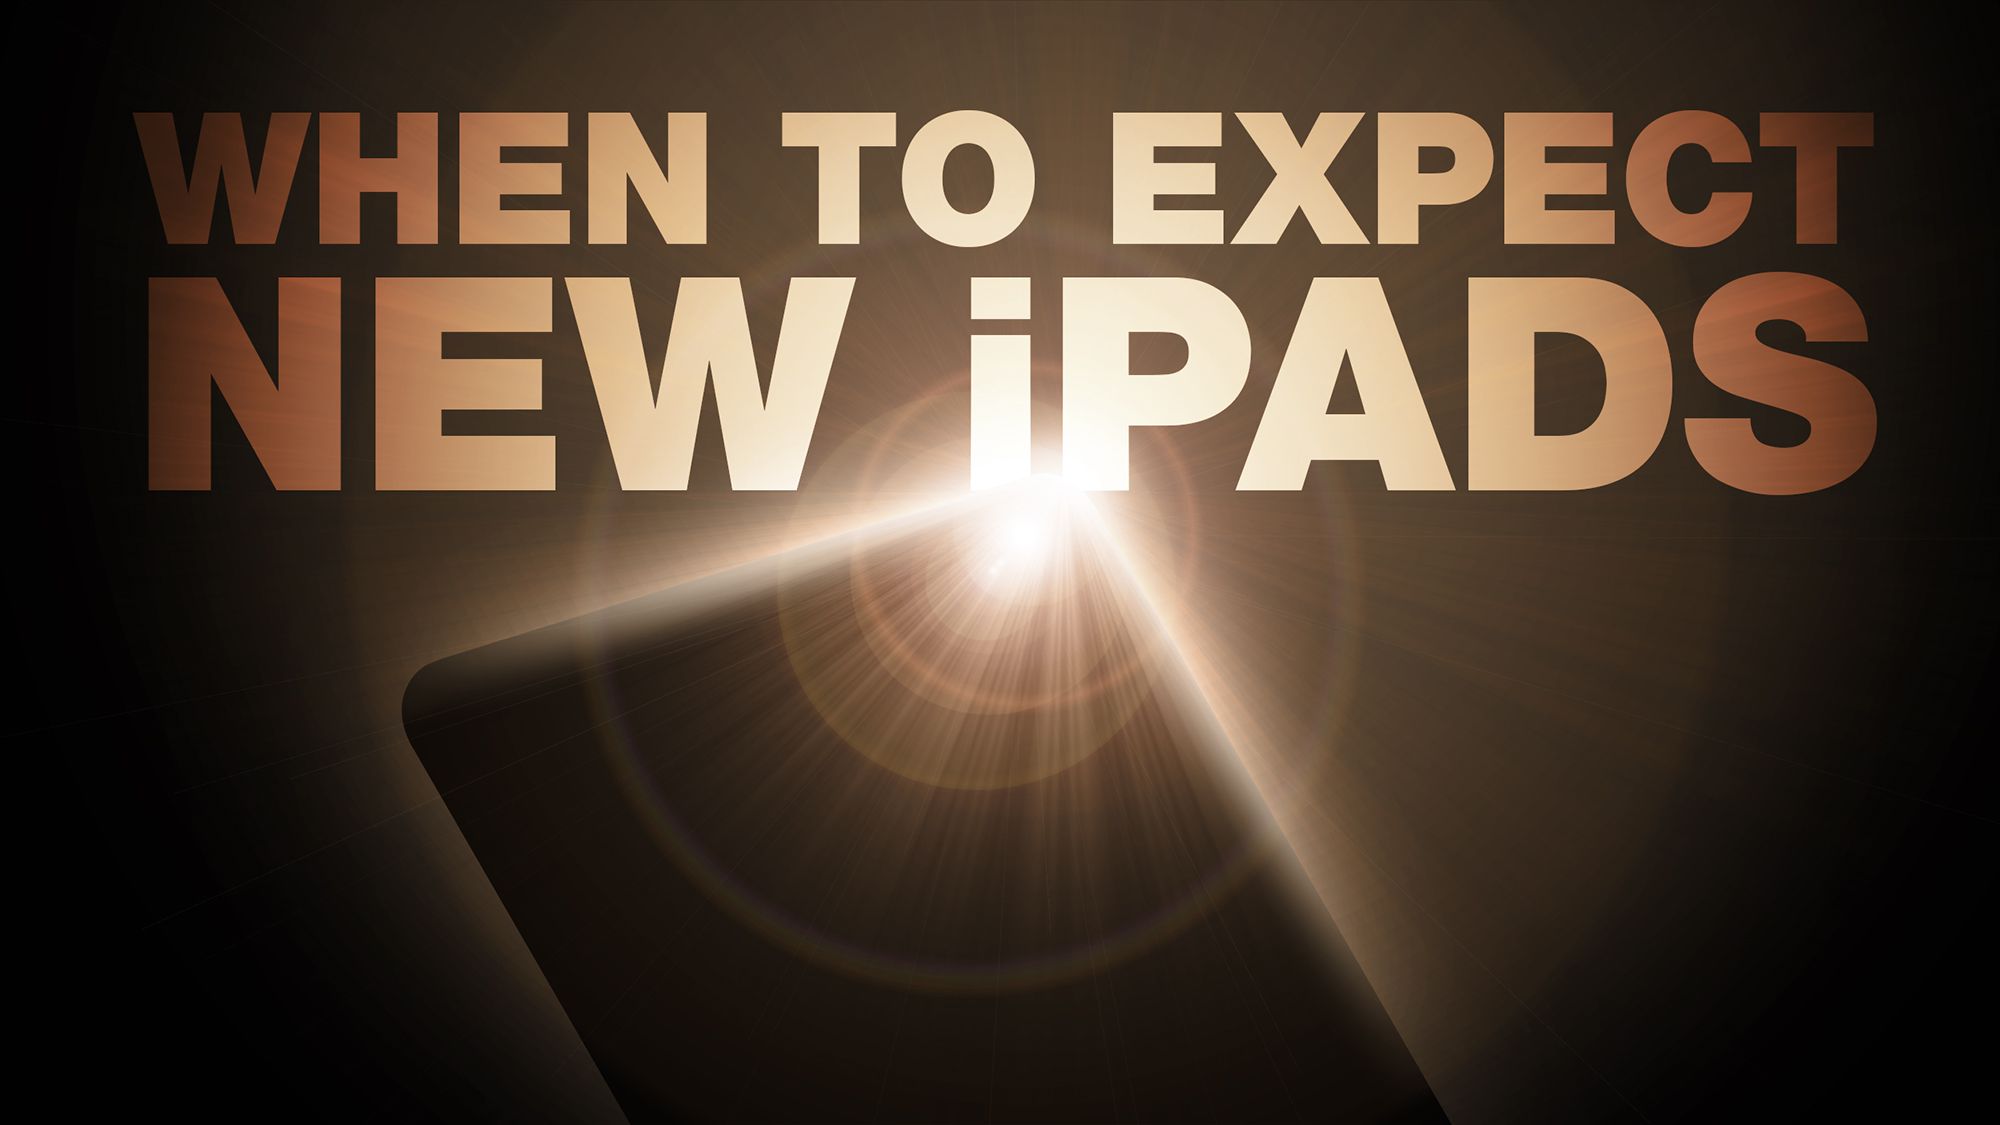 Gorman: Nenhum anúncio do iPad em 26 de março